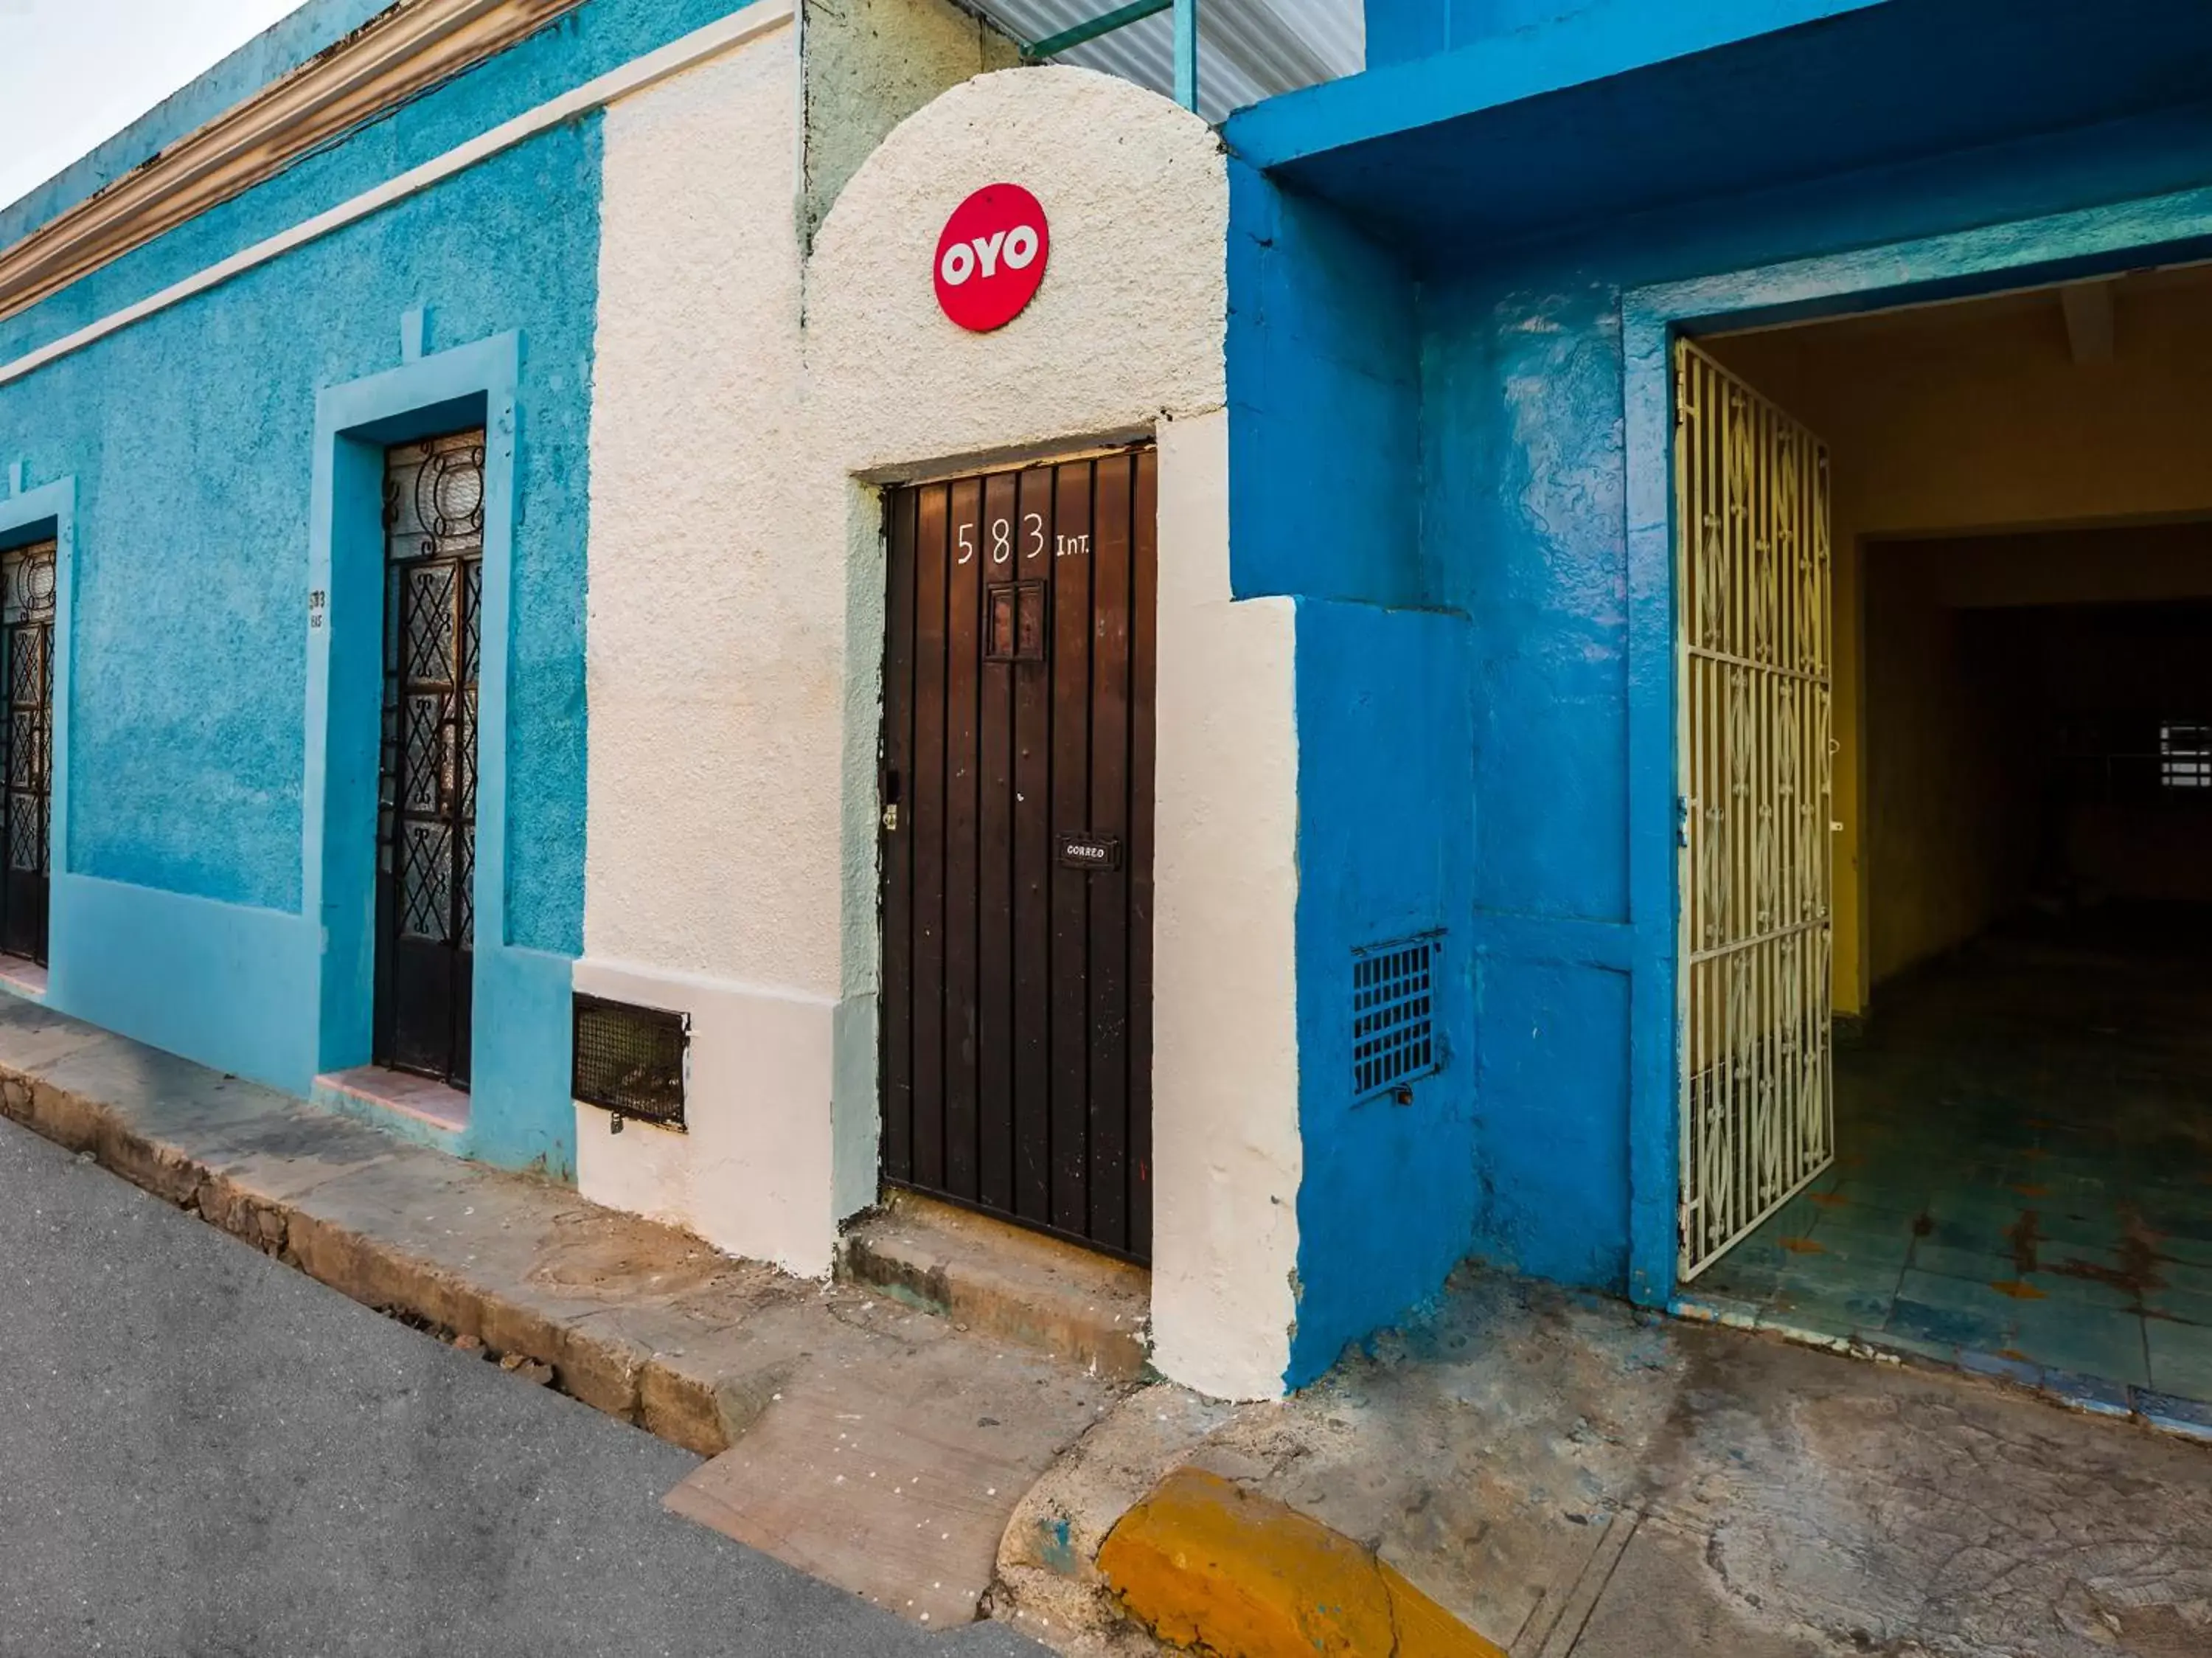 Property building in Casa Cuevas & Amaro